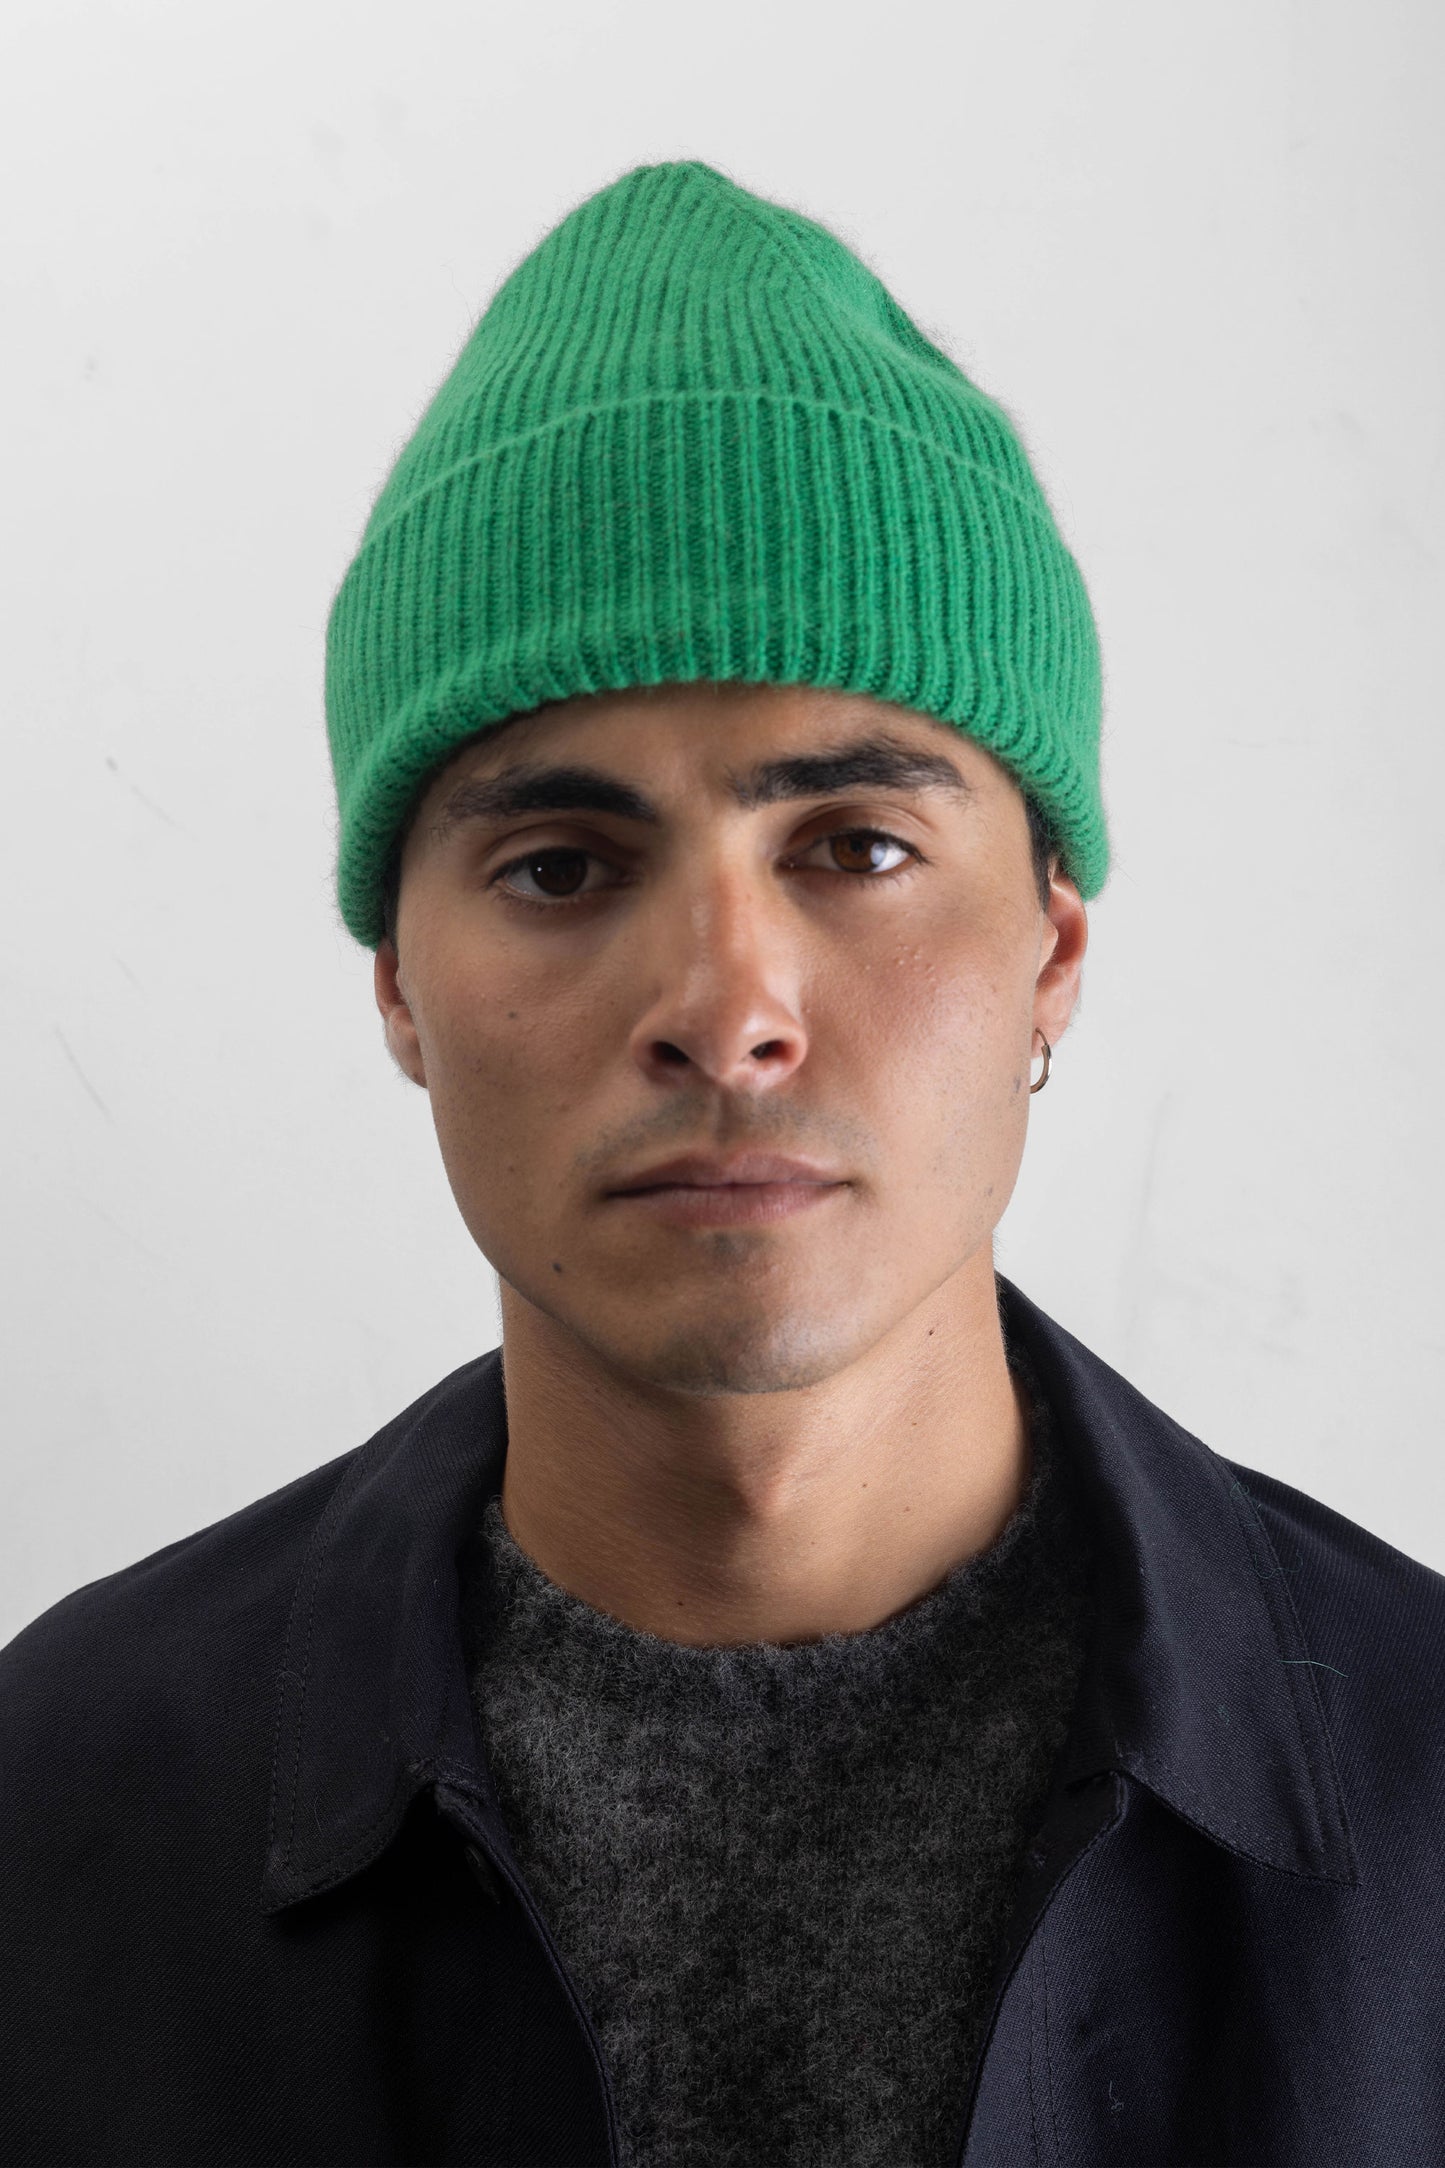 Green wool hat